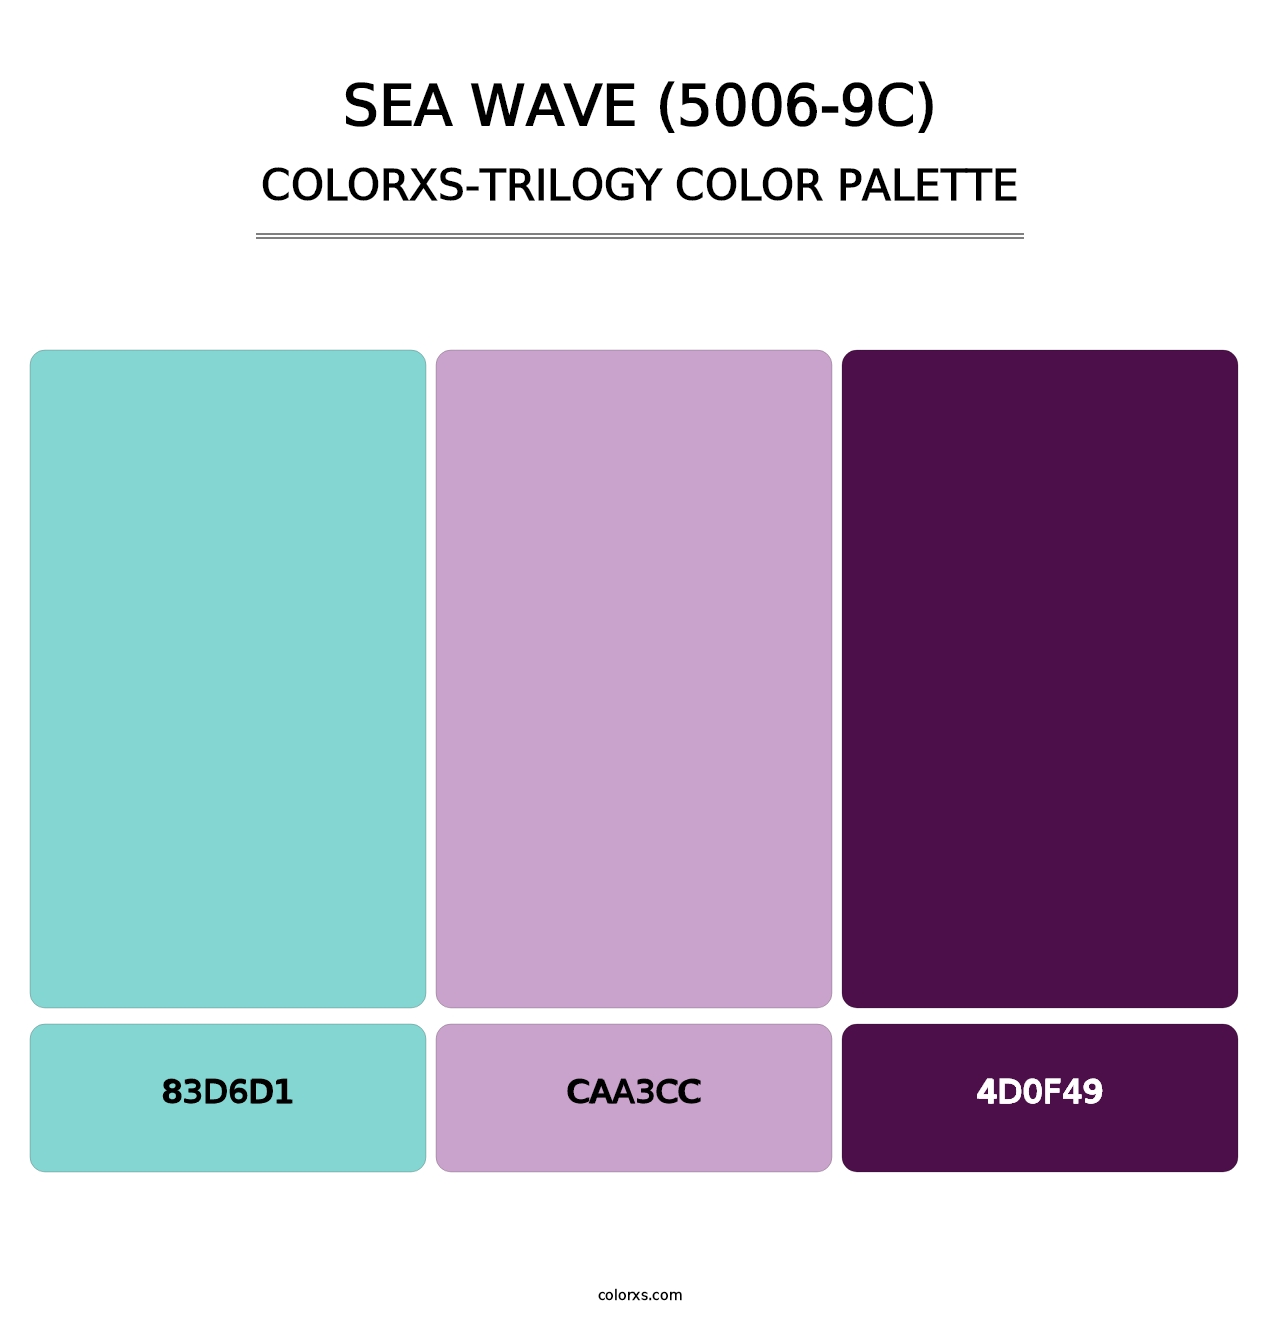 Sea Wave (5006-9C) - Colorxs Trilogy Palette